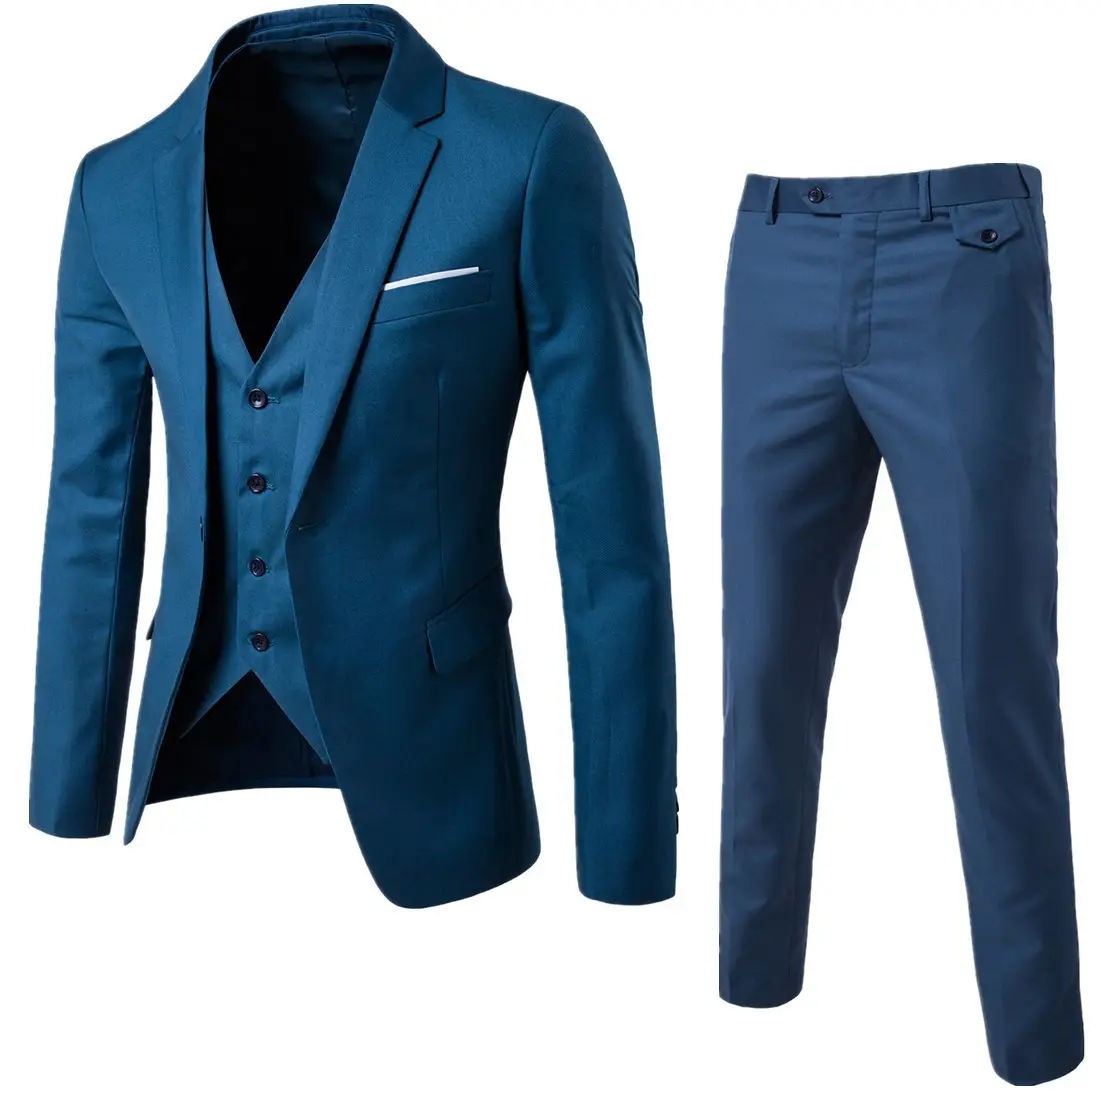 Trajes de hombre Blazers 3 piezas elegante de negocios Slim Fit pantalón abrigo diseño chaleco pantalones abrigo pantalón hombres traje trajes de boda para hombres